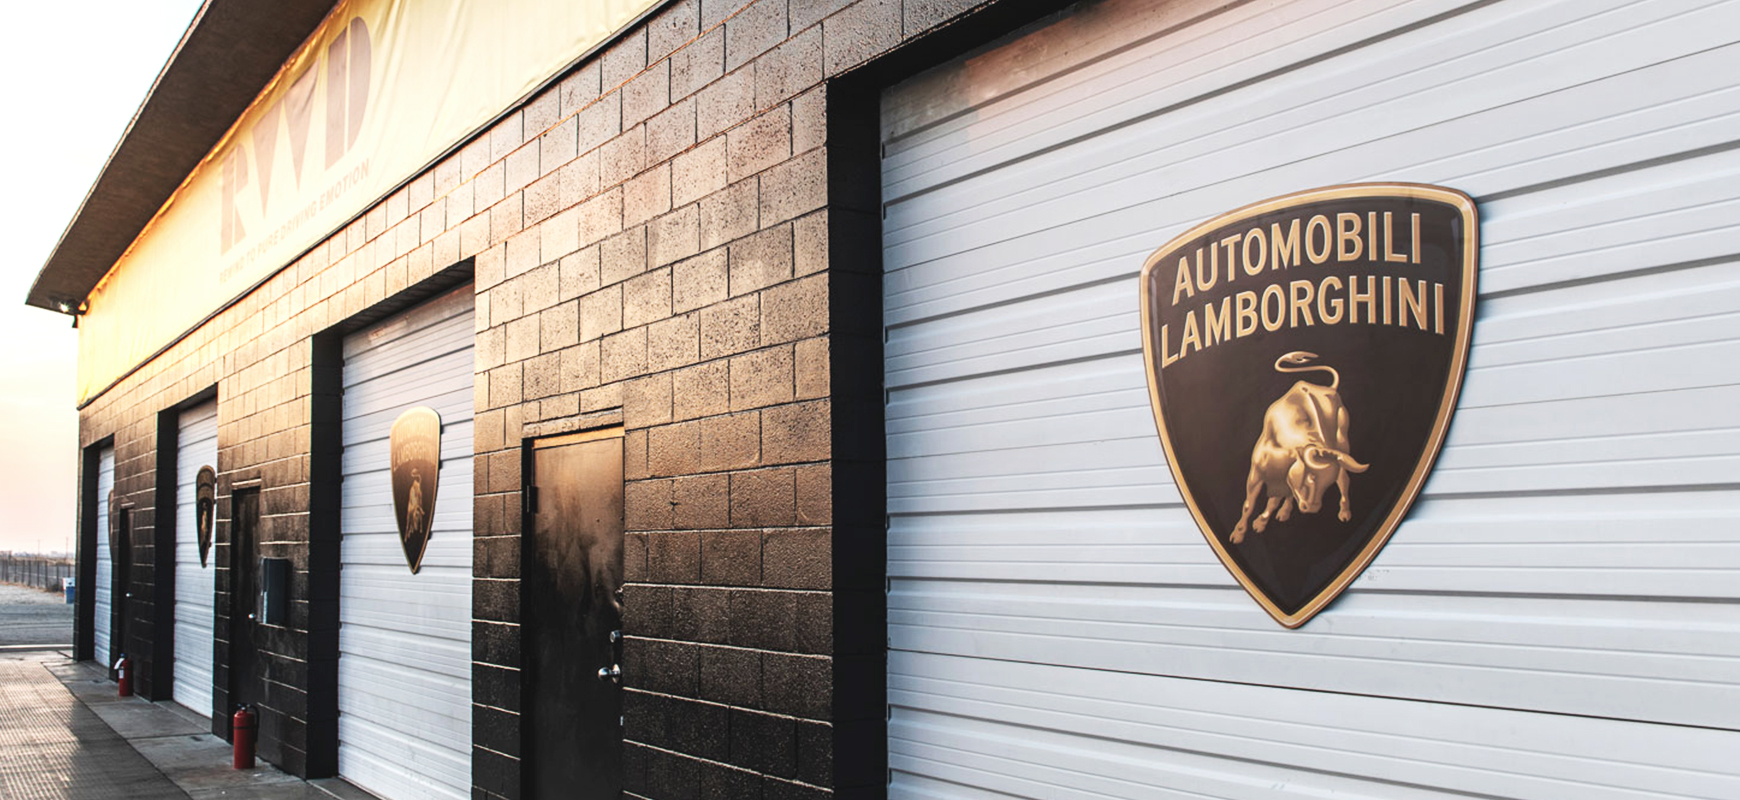 Lamborghini custom metal logo signs made of dibond displayed at the business outdoor venue